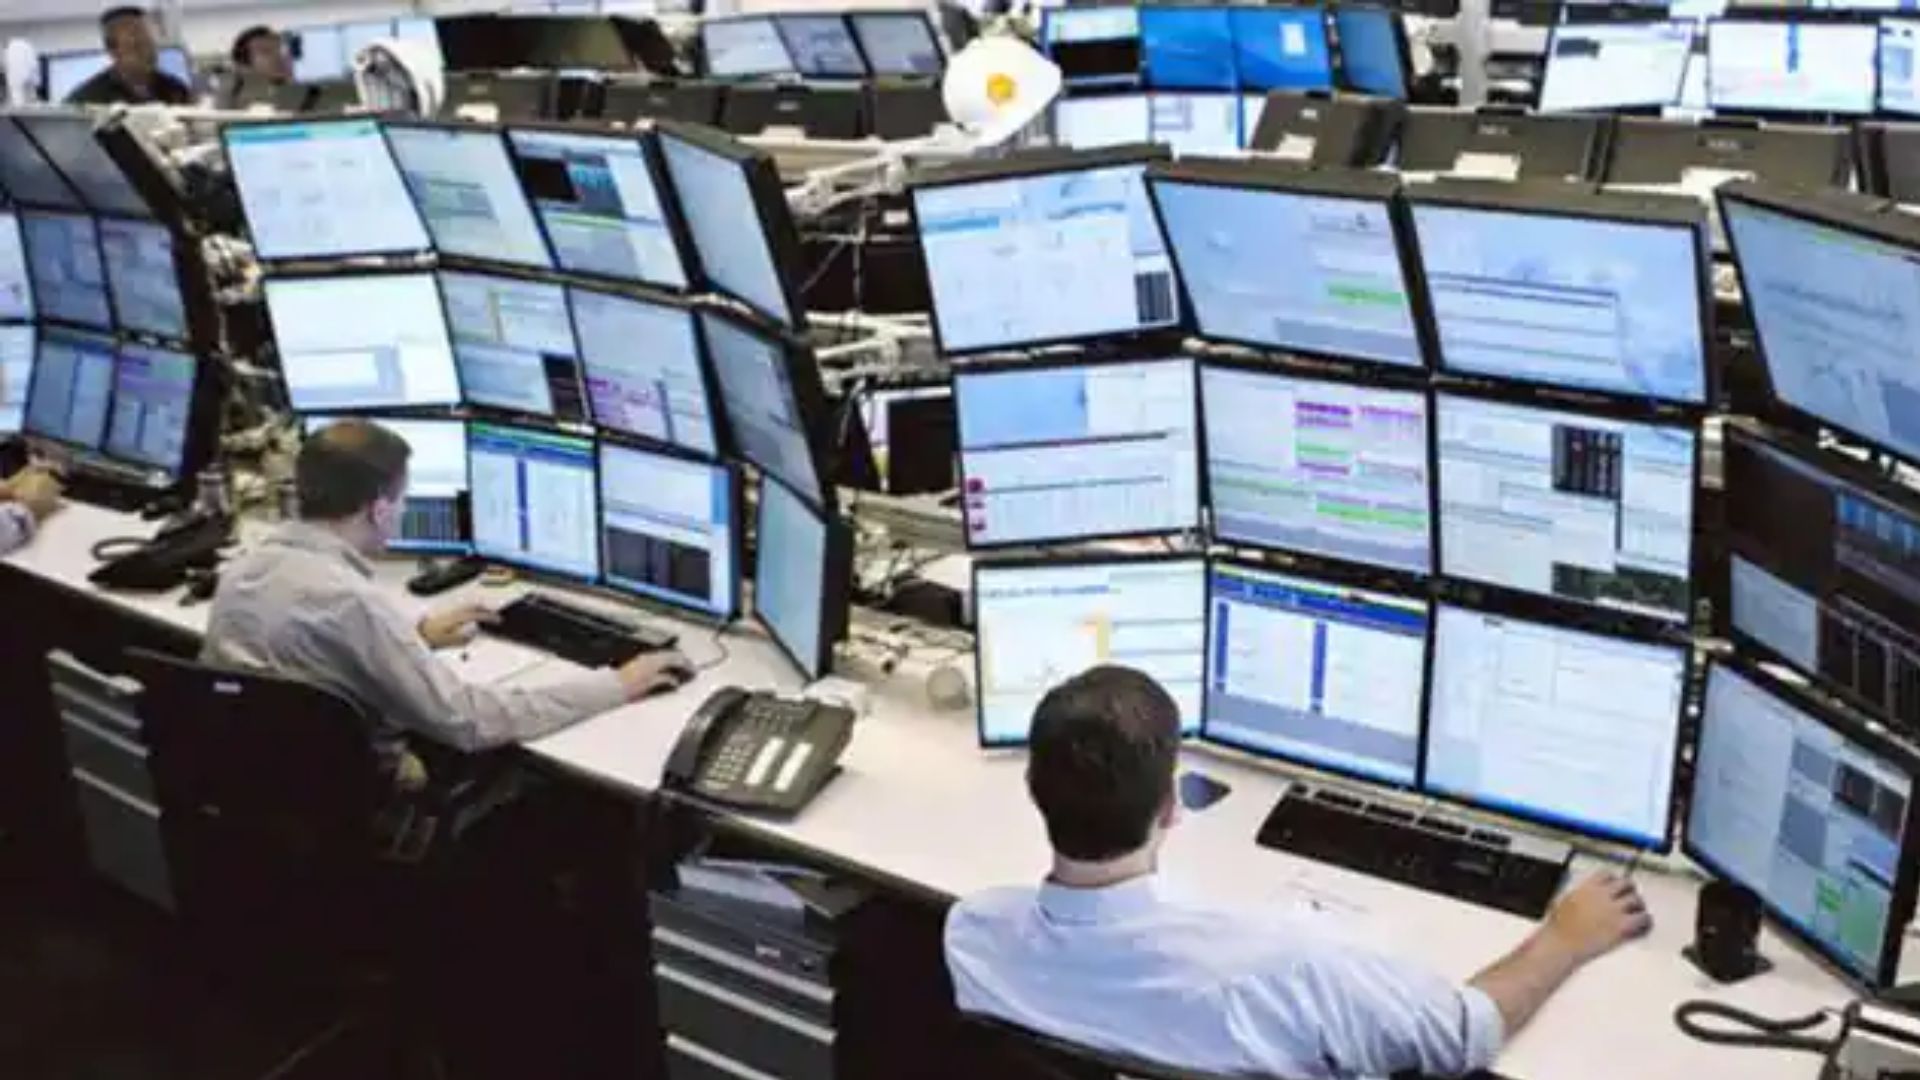 शेयर समीक्षा: वैश्विक रुख से तय होगी बाजार की दिशा, इस वजह से रहेगा उतार-चढ़ाव 